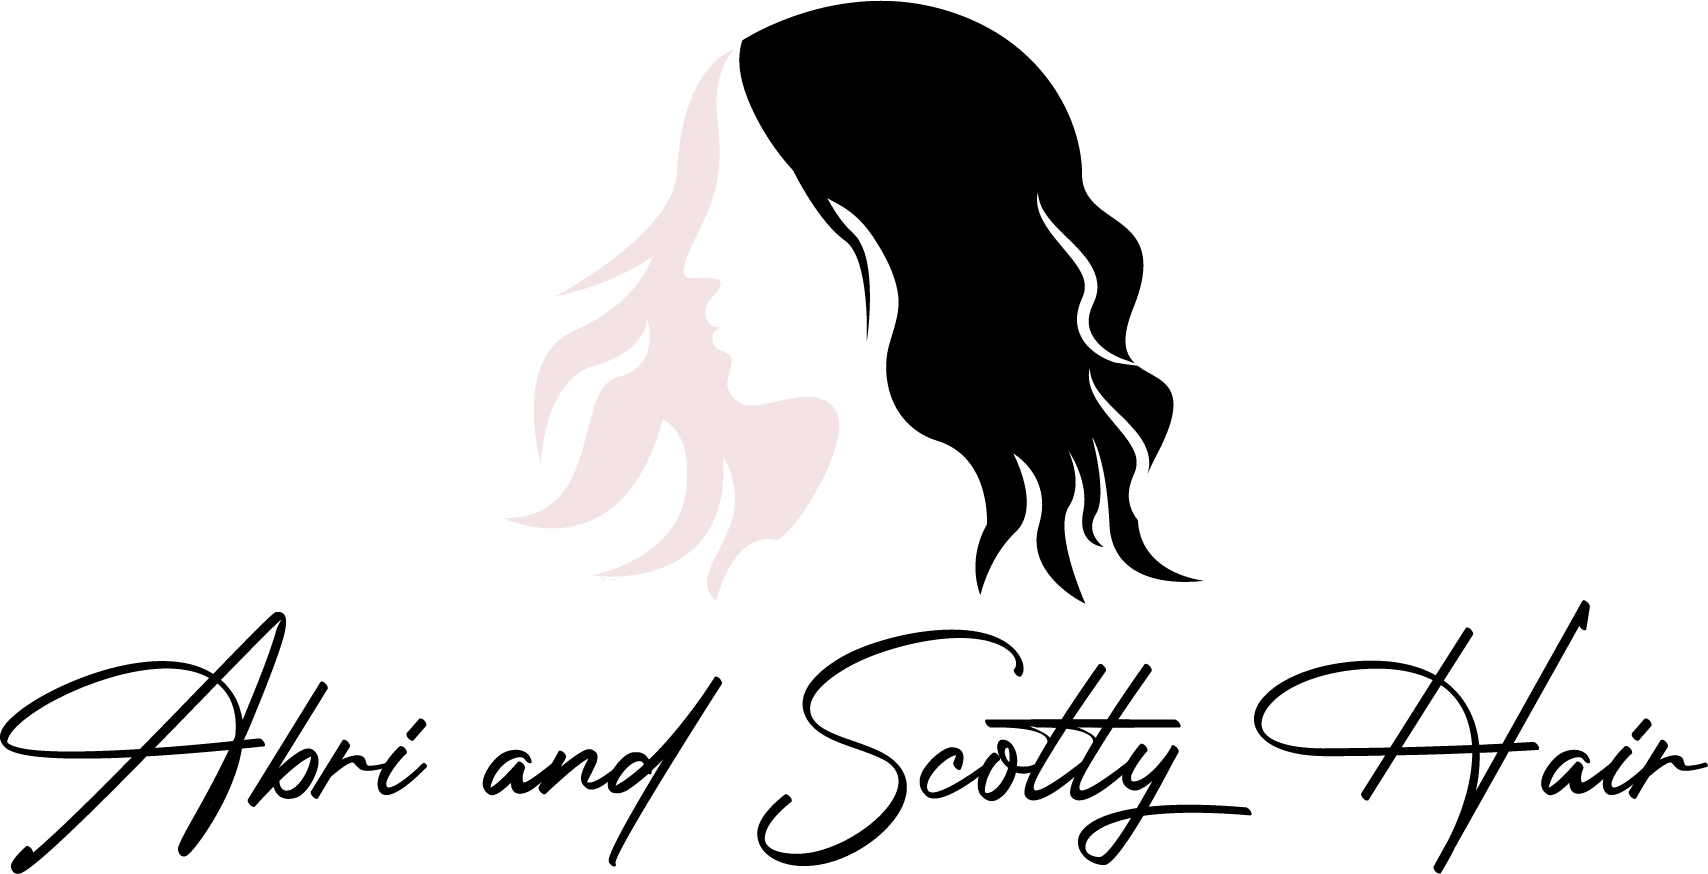 Abri and Scotty Hair